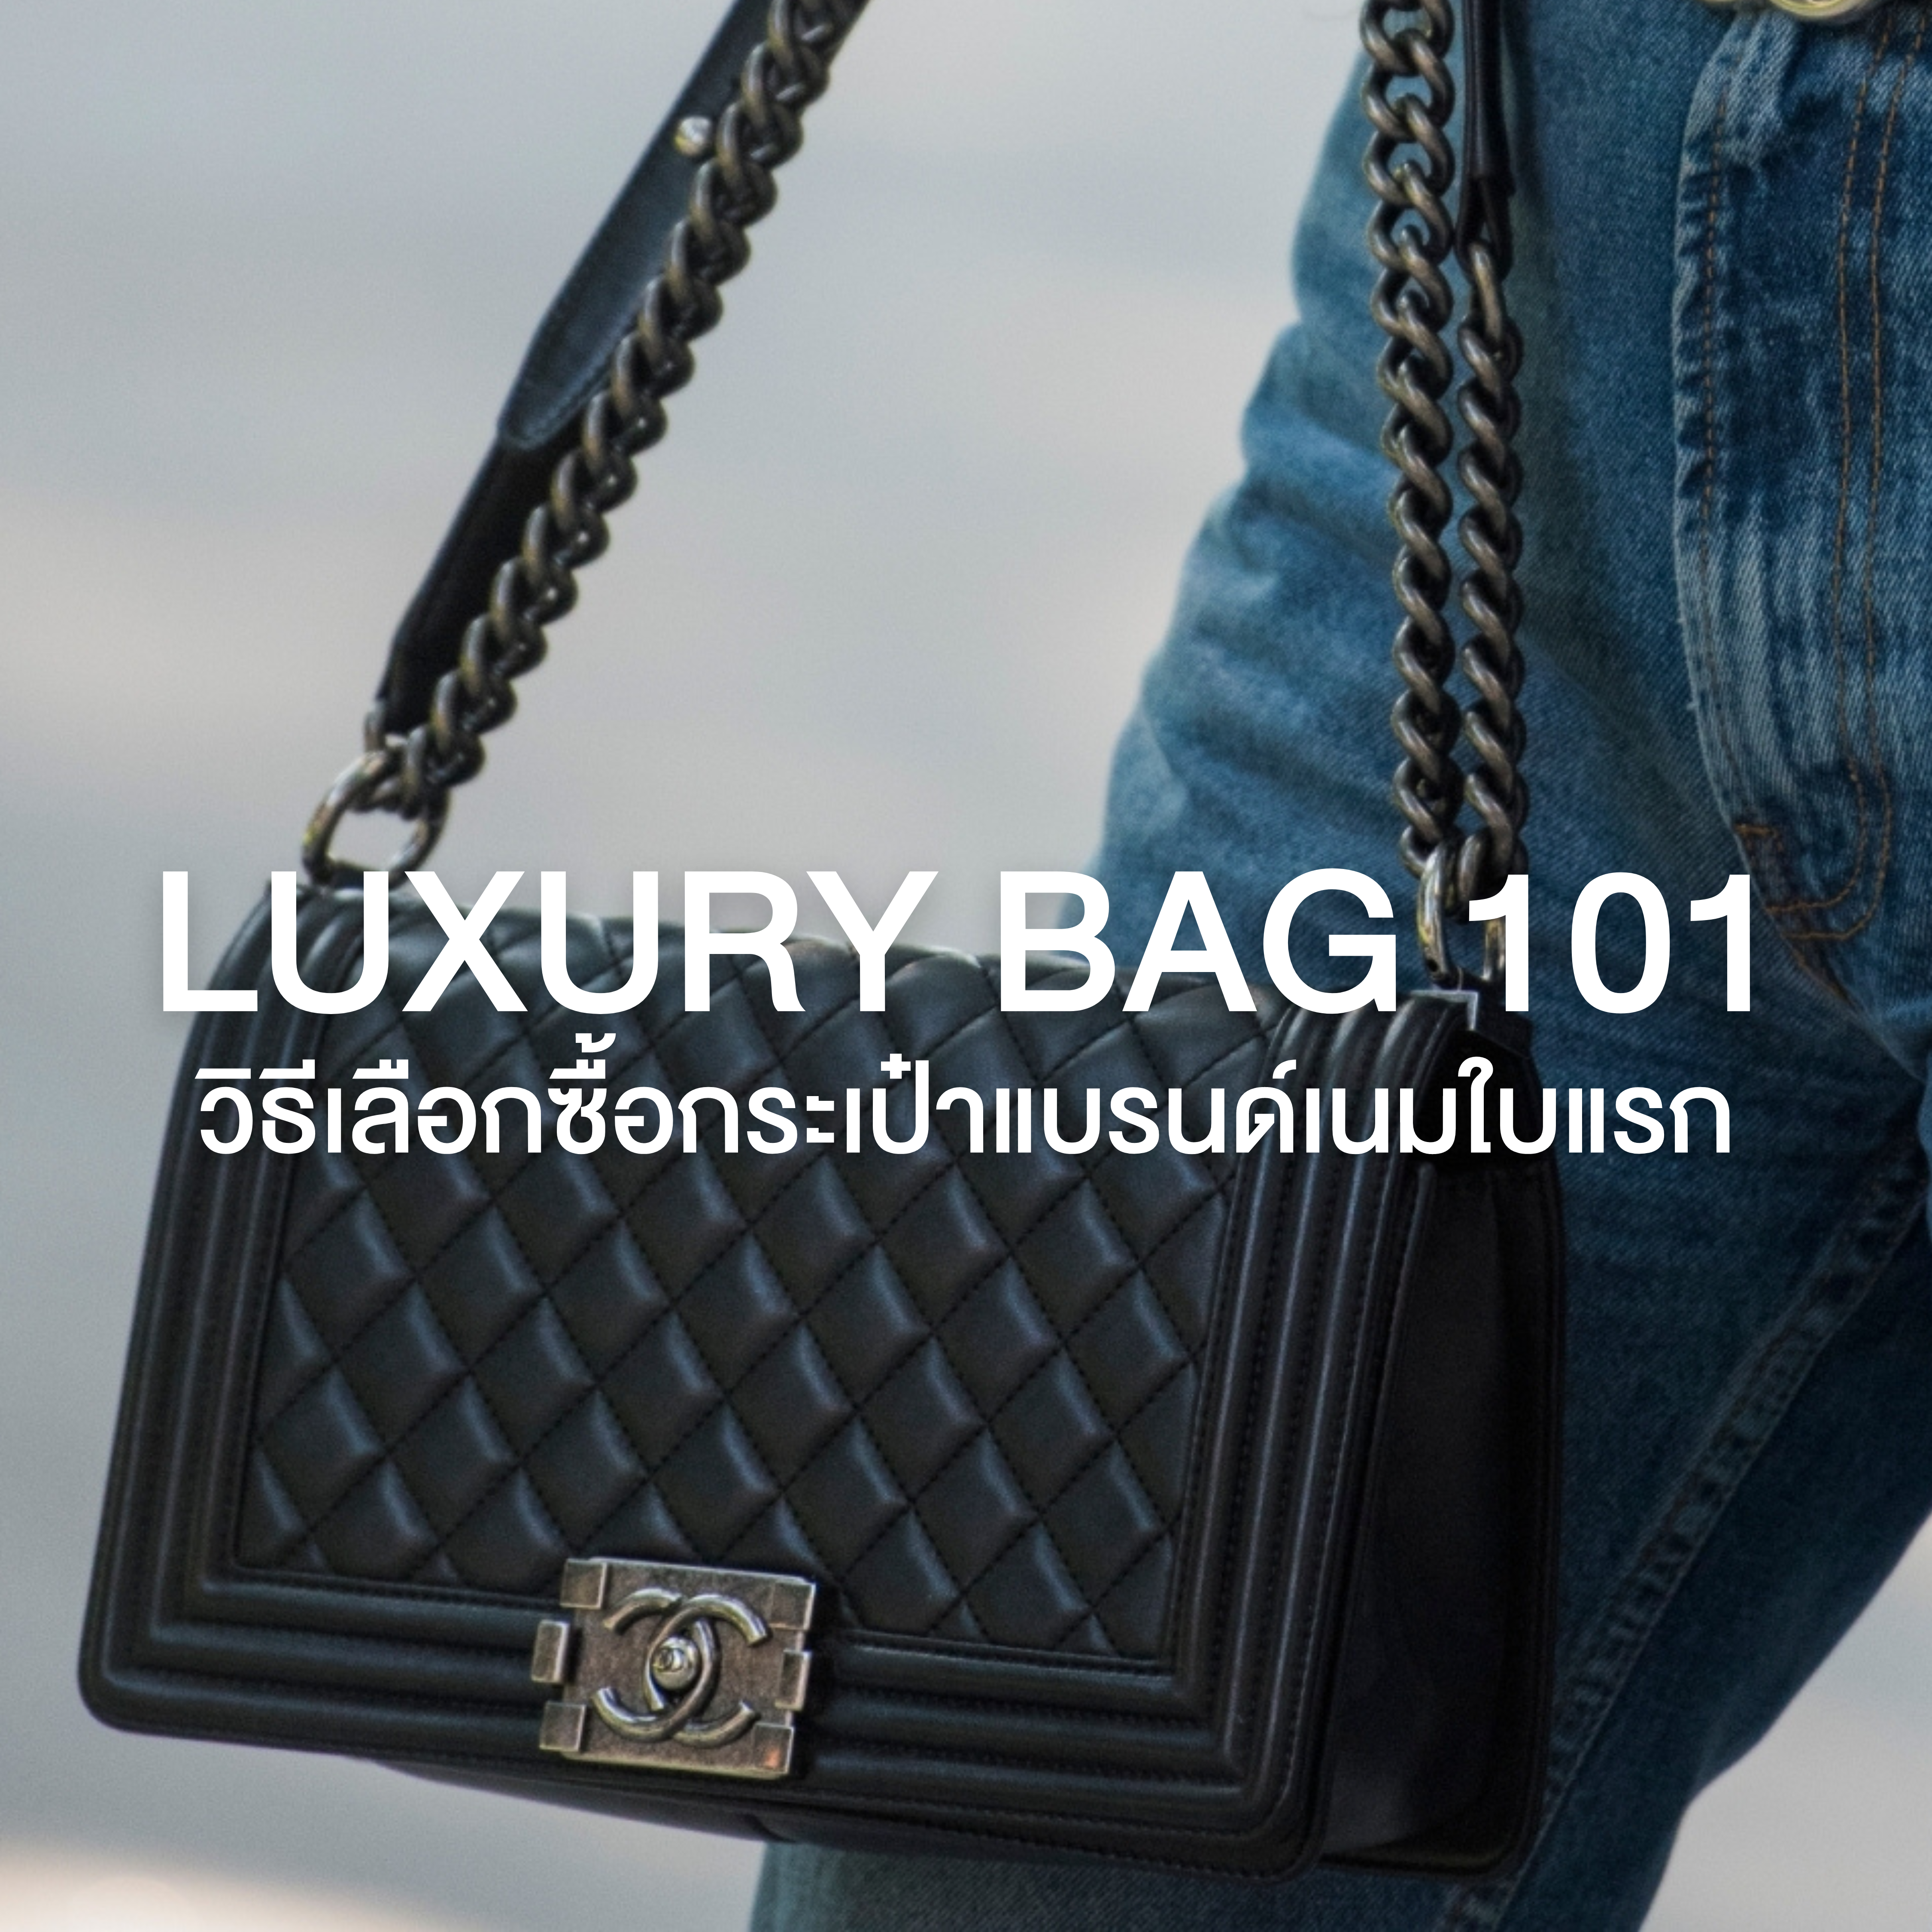 Luxury Bag 101 วิธีเลือกซื้อ กระเป๋าแบรนด์เนมใบแรก